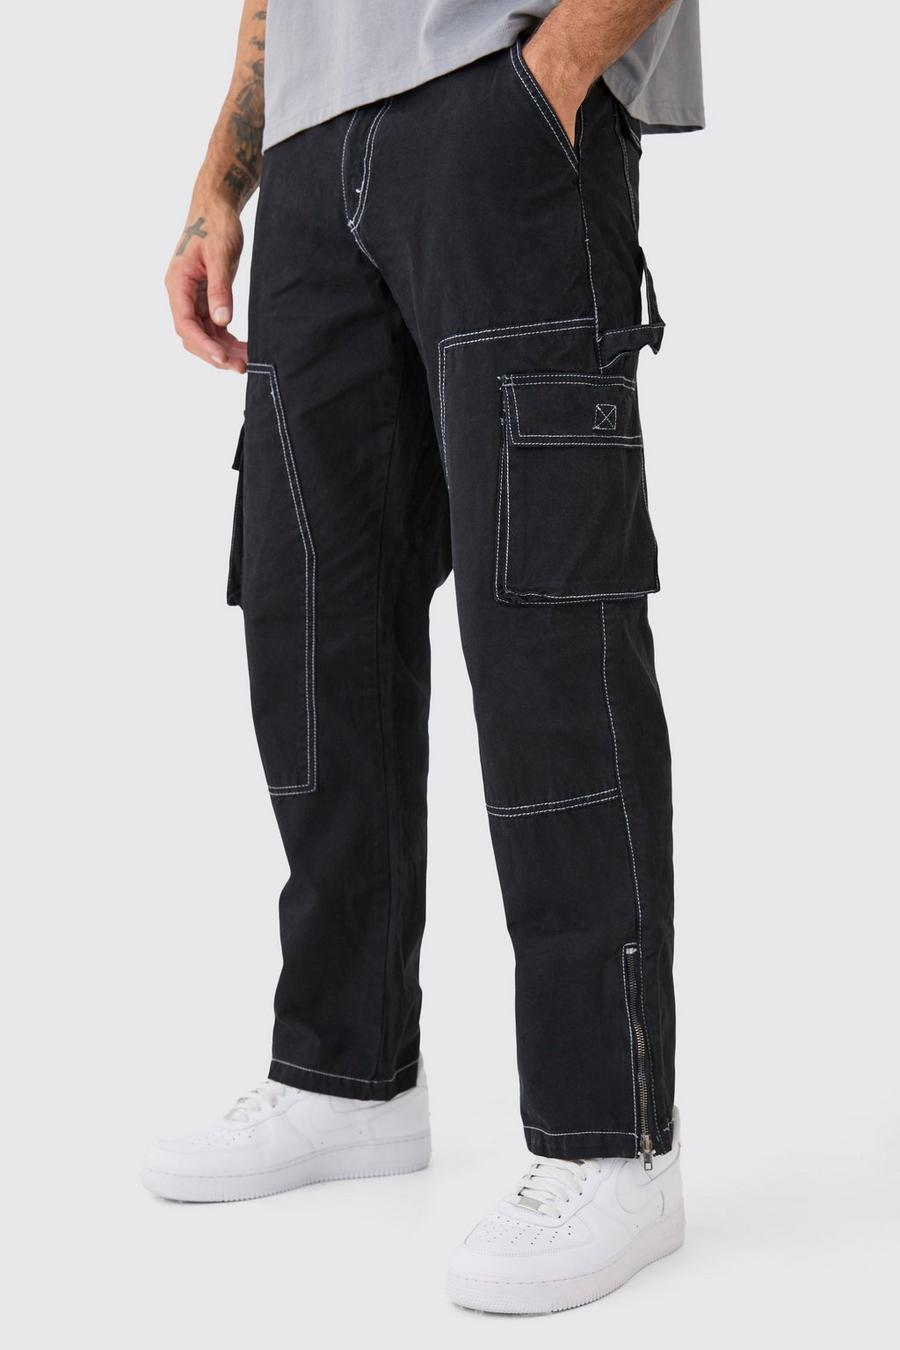 Black Cargo Pants For Men Men's Mid-waist Zip Cargo Pants Relaxed